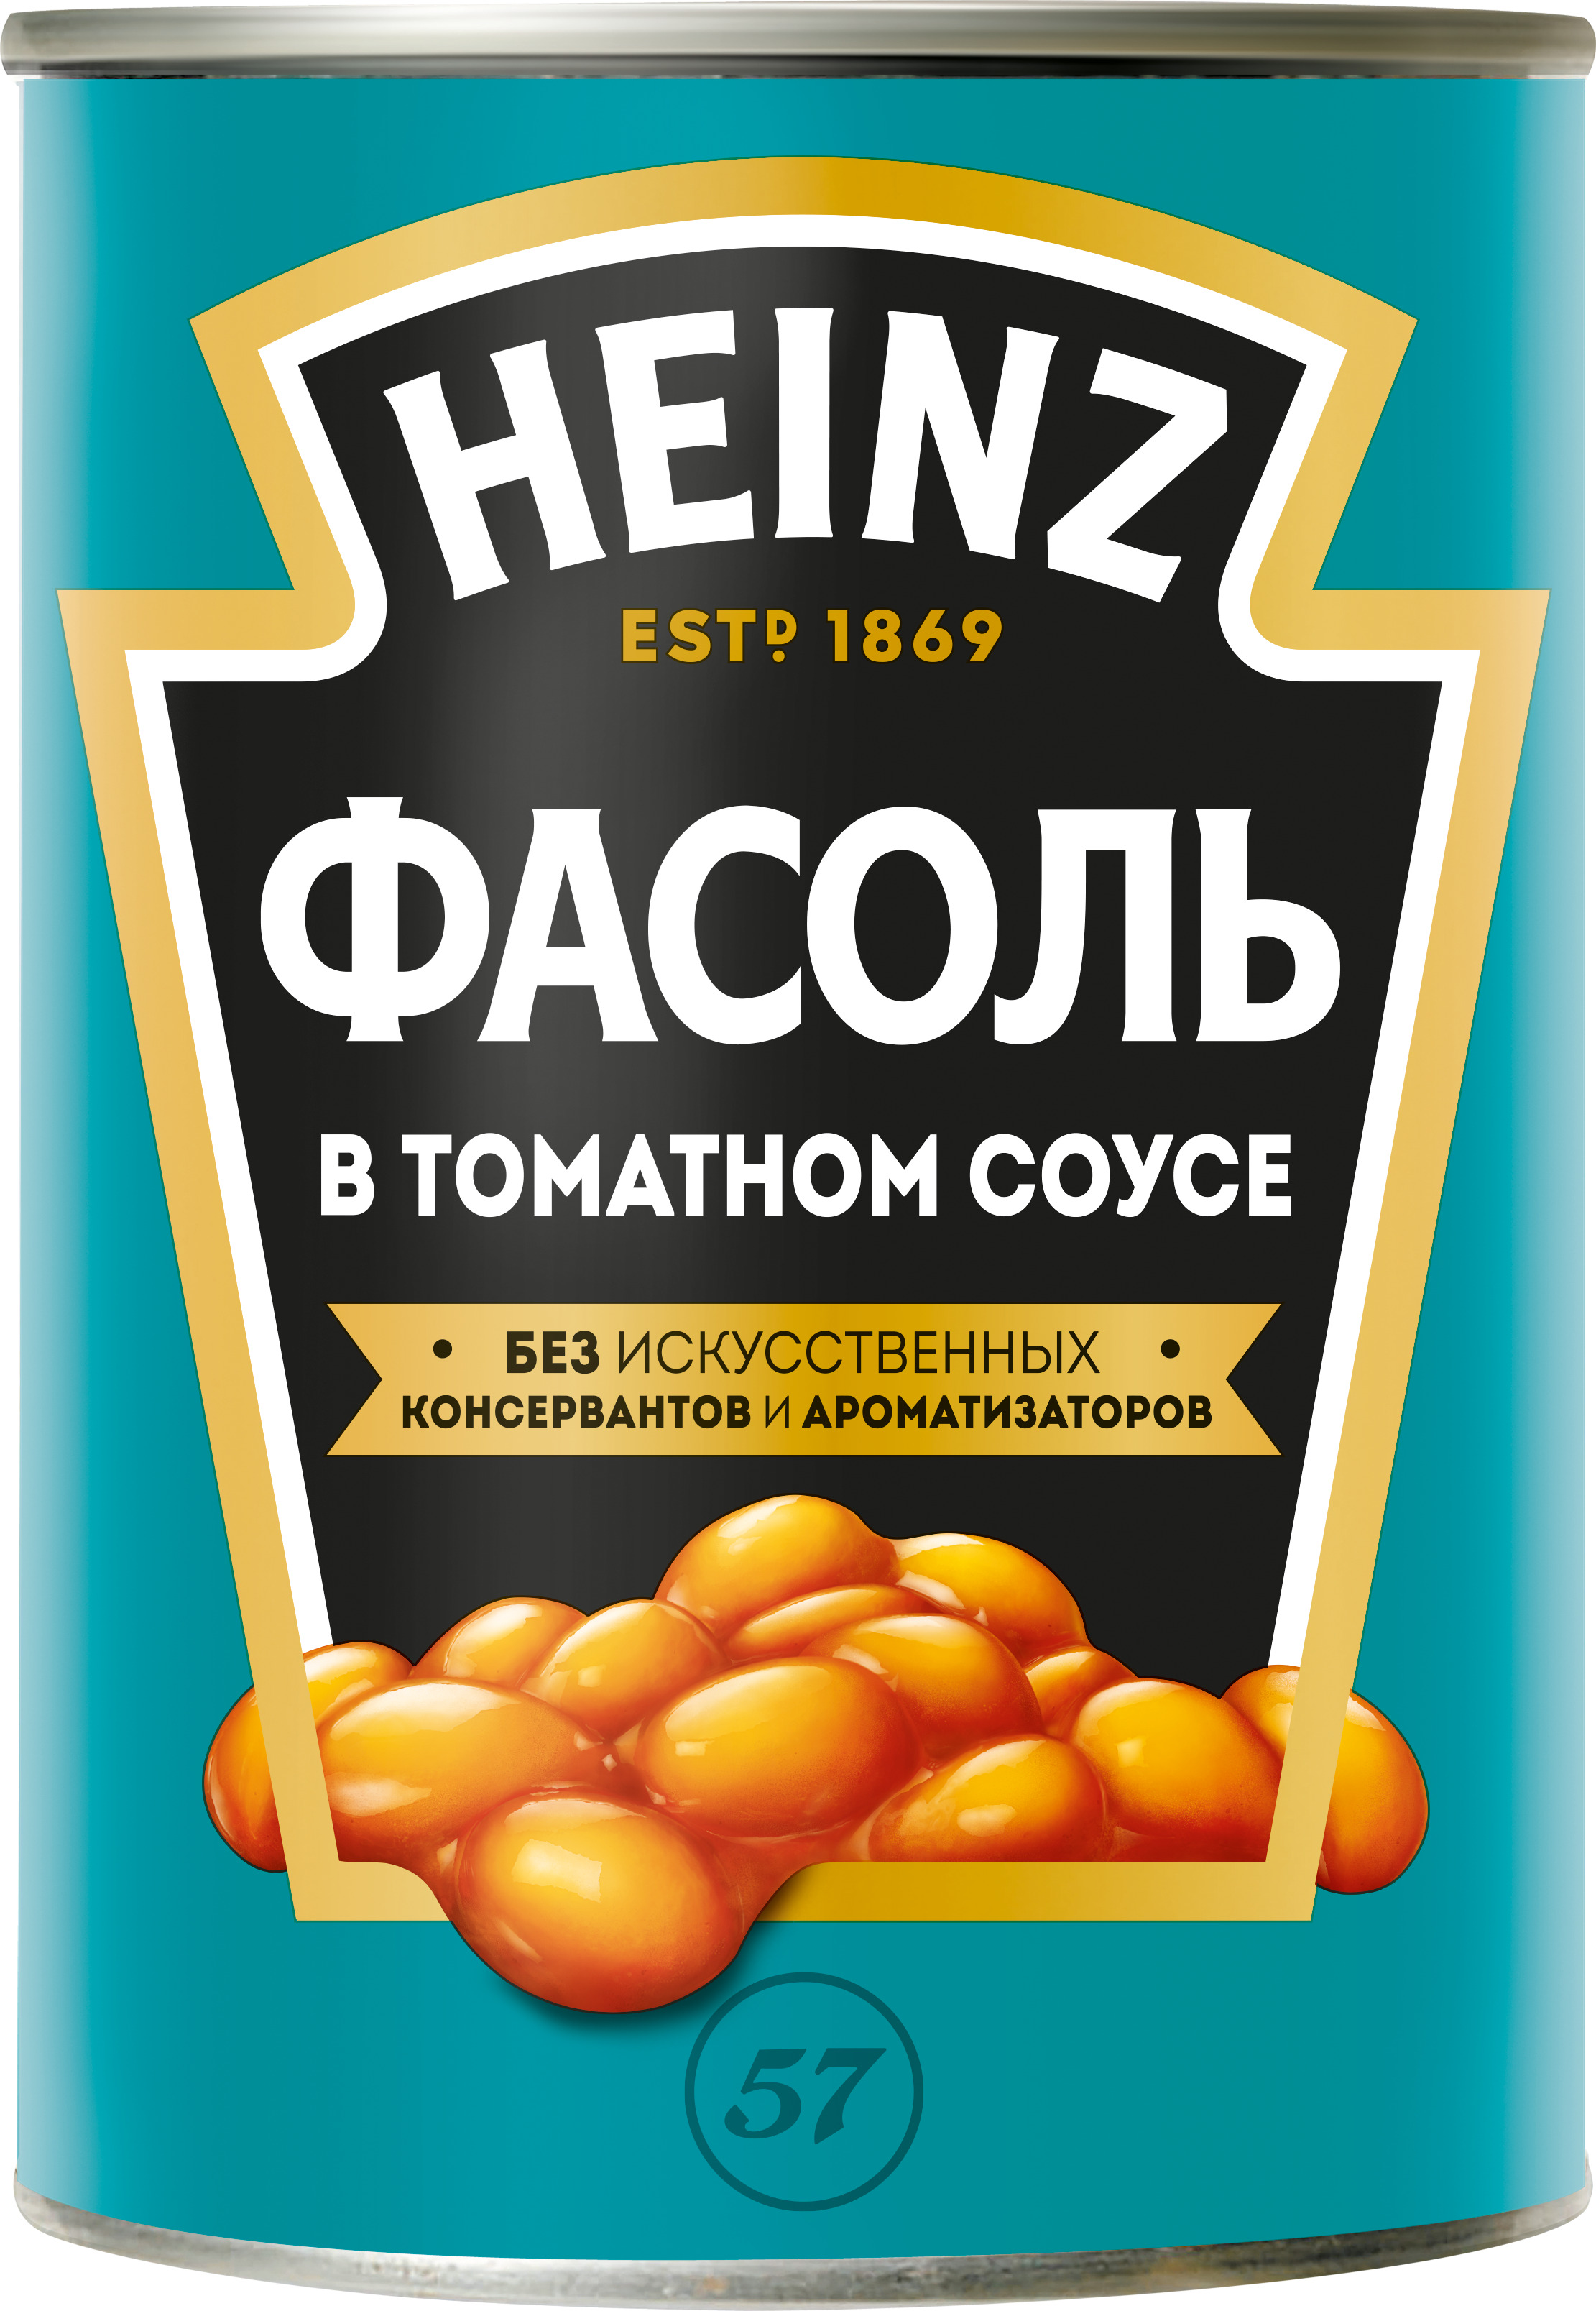 Фасоль белая в томатном соусе Хайнц 415